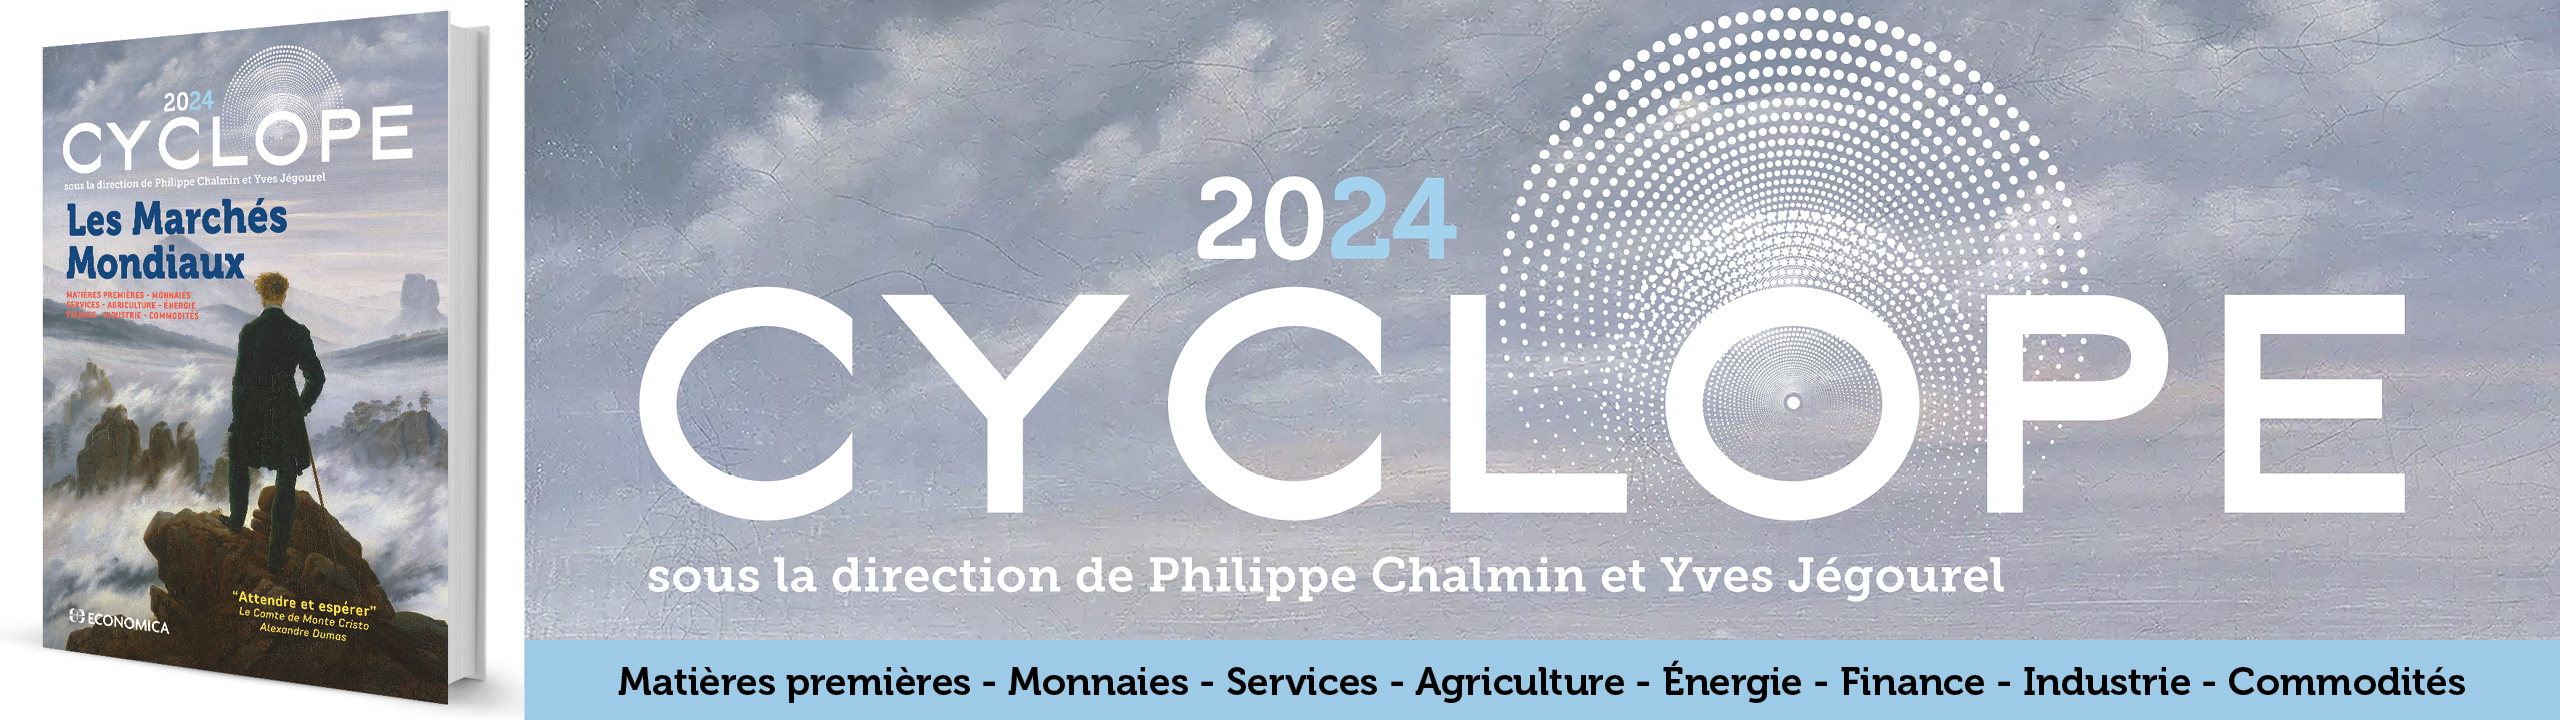 Cyclope - Les marchs mondiaux 2024 - Chalmin P. et Jgourel Y. - 9782717872903